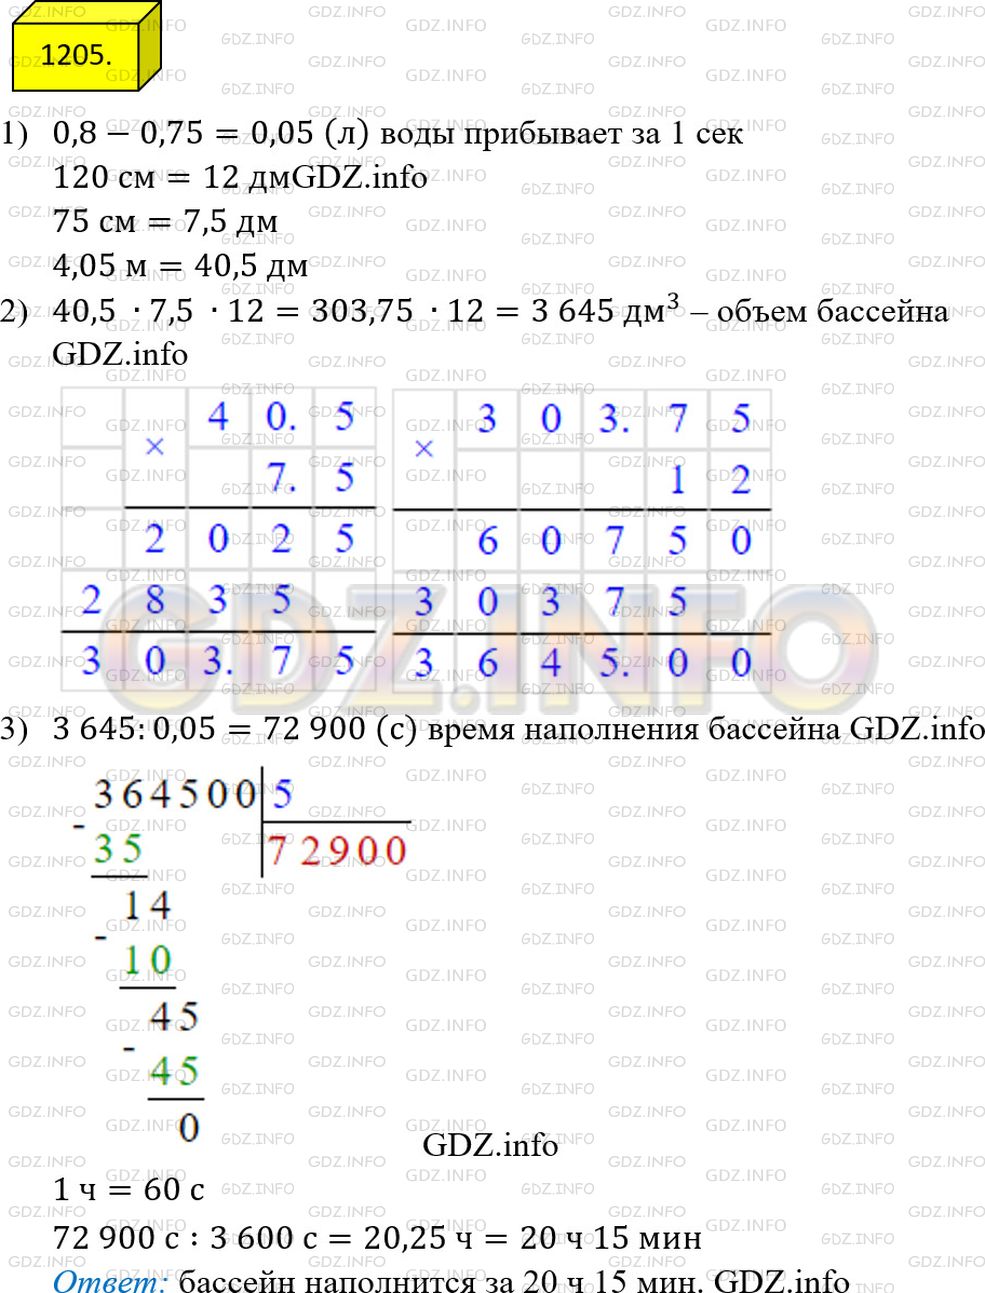 Фото решения 2: Номер №1205 из ГДЗ по Математике 5 класс: Мерзляк А.Г. г.